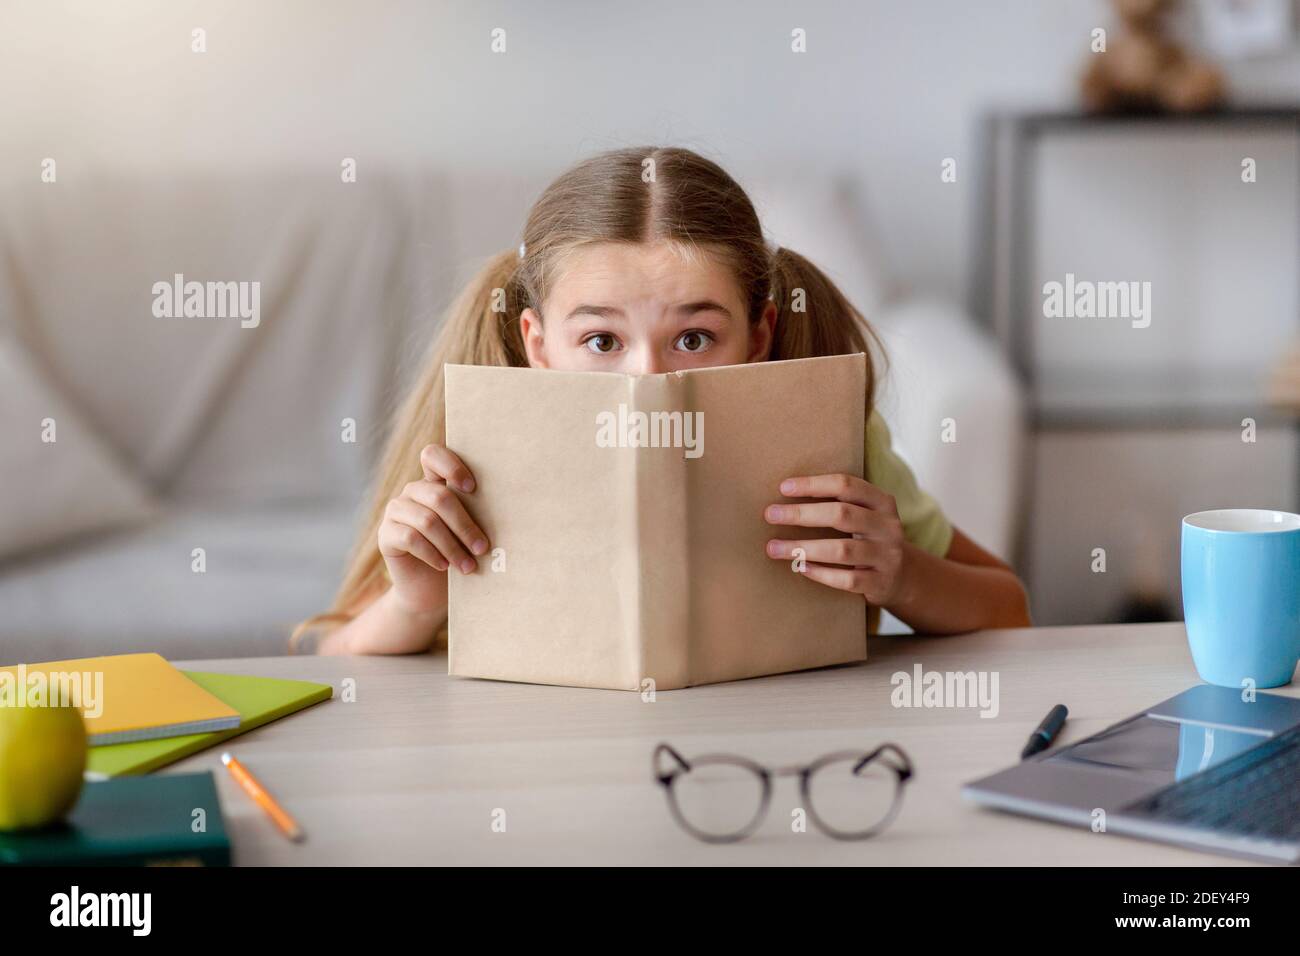 Fille effrayée avec les yeux larges ouverts se cachant derrière un livre Banque D'Images